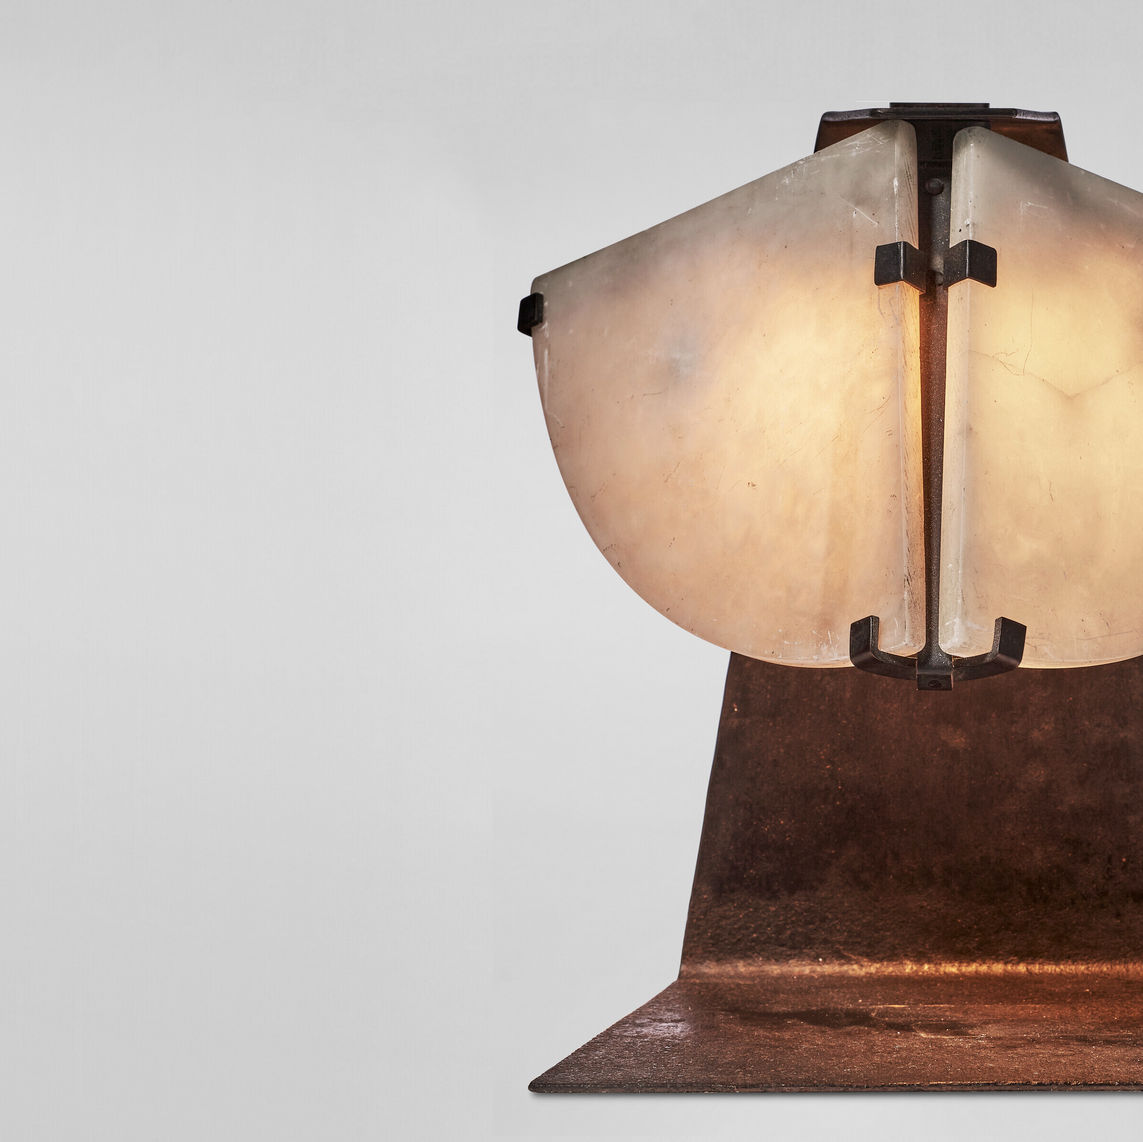 Pierre Chareau, “Masque” Lamp, vue 03